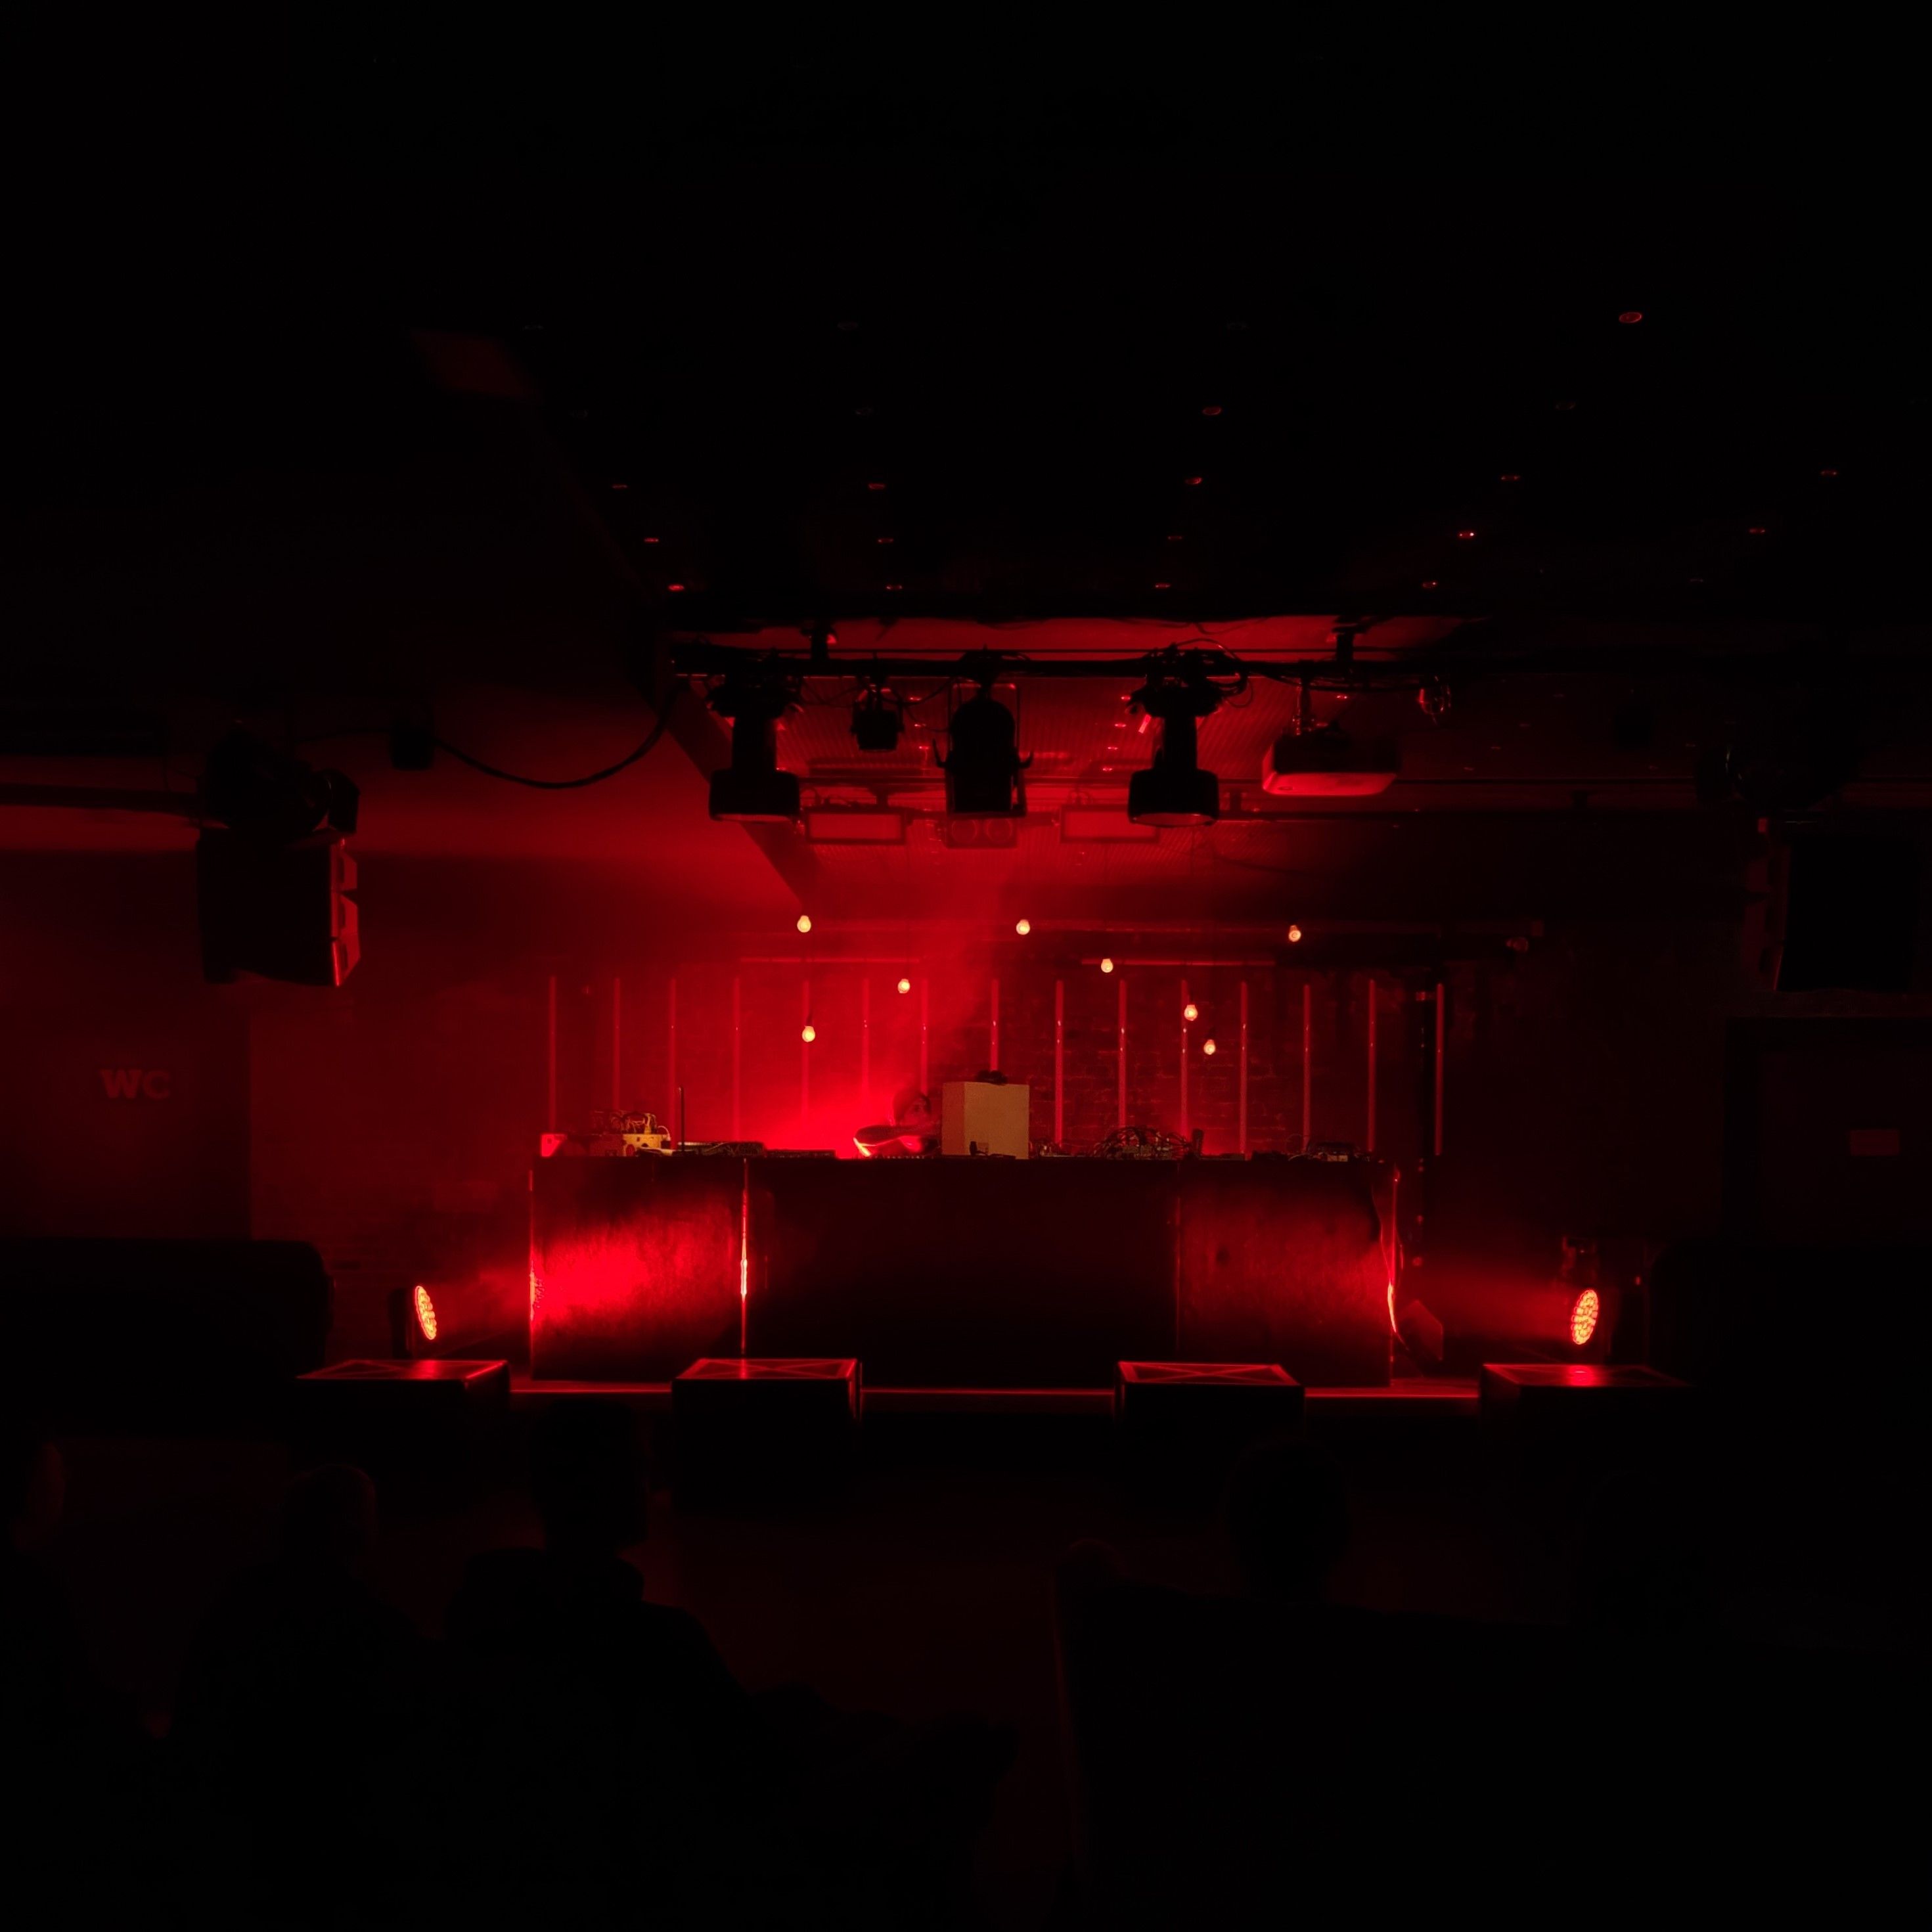 Zusehen ist eine Bühne und ein DJ-Pult auf der Bühne. Der Raum ist in ein rotes Licht getaucht.